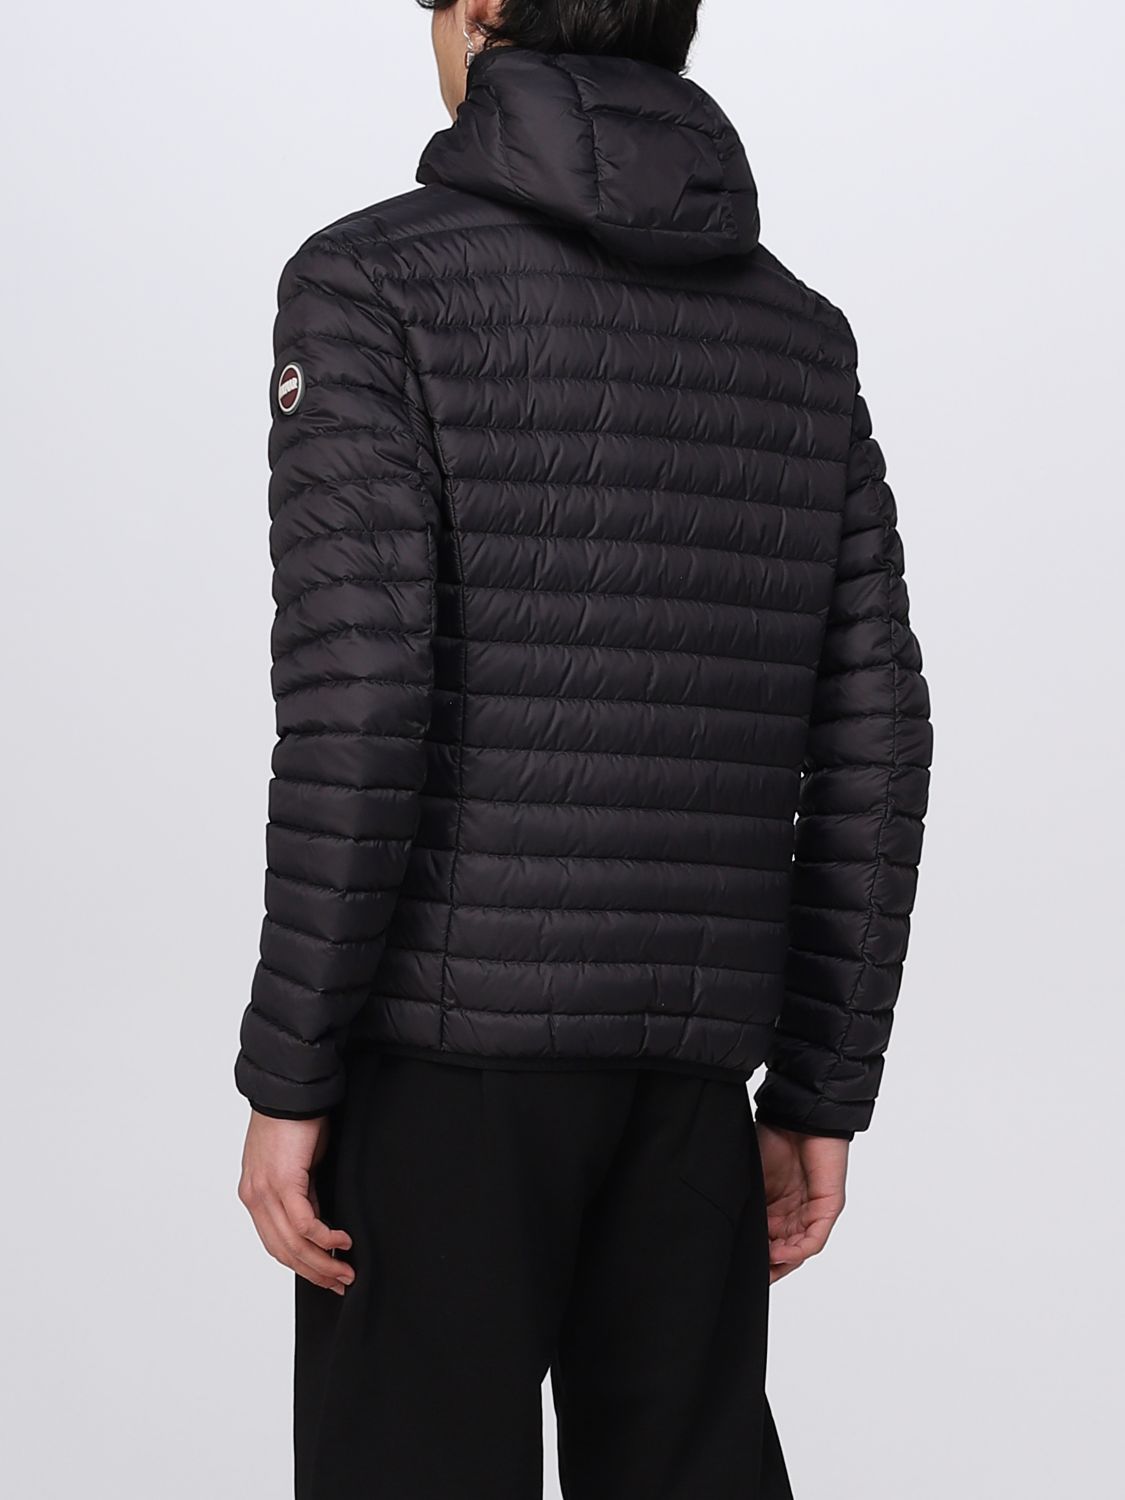 COLMAR: jacket for man - Black | Colmar jacket 1277R8VX online on ...